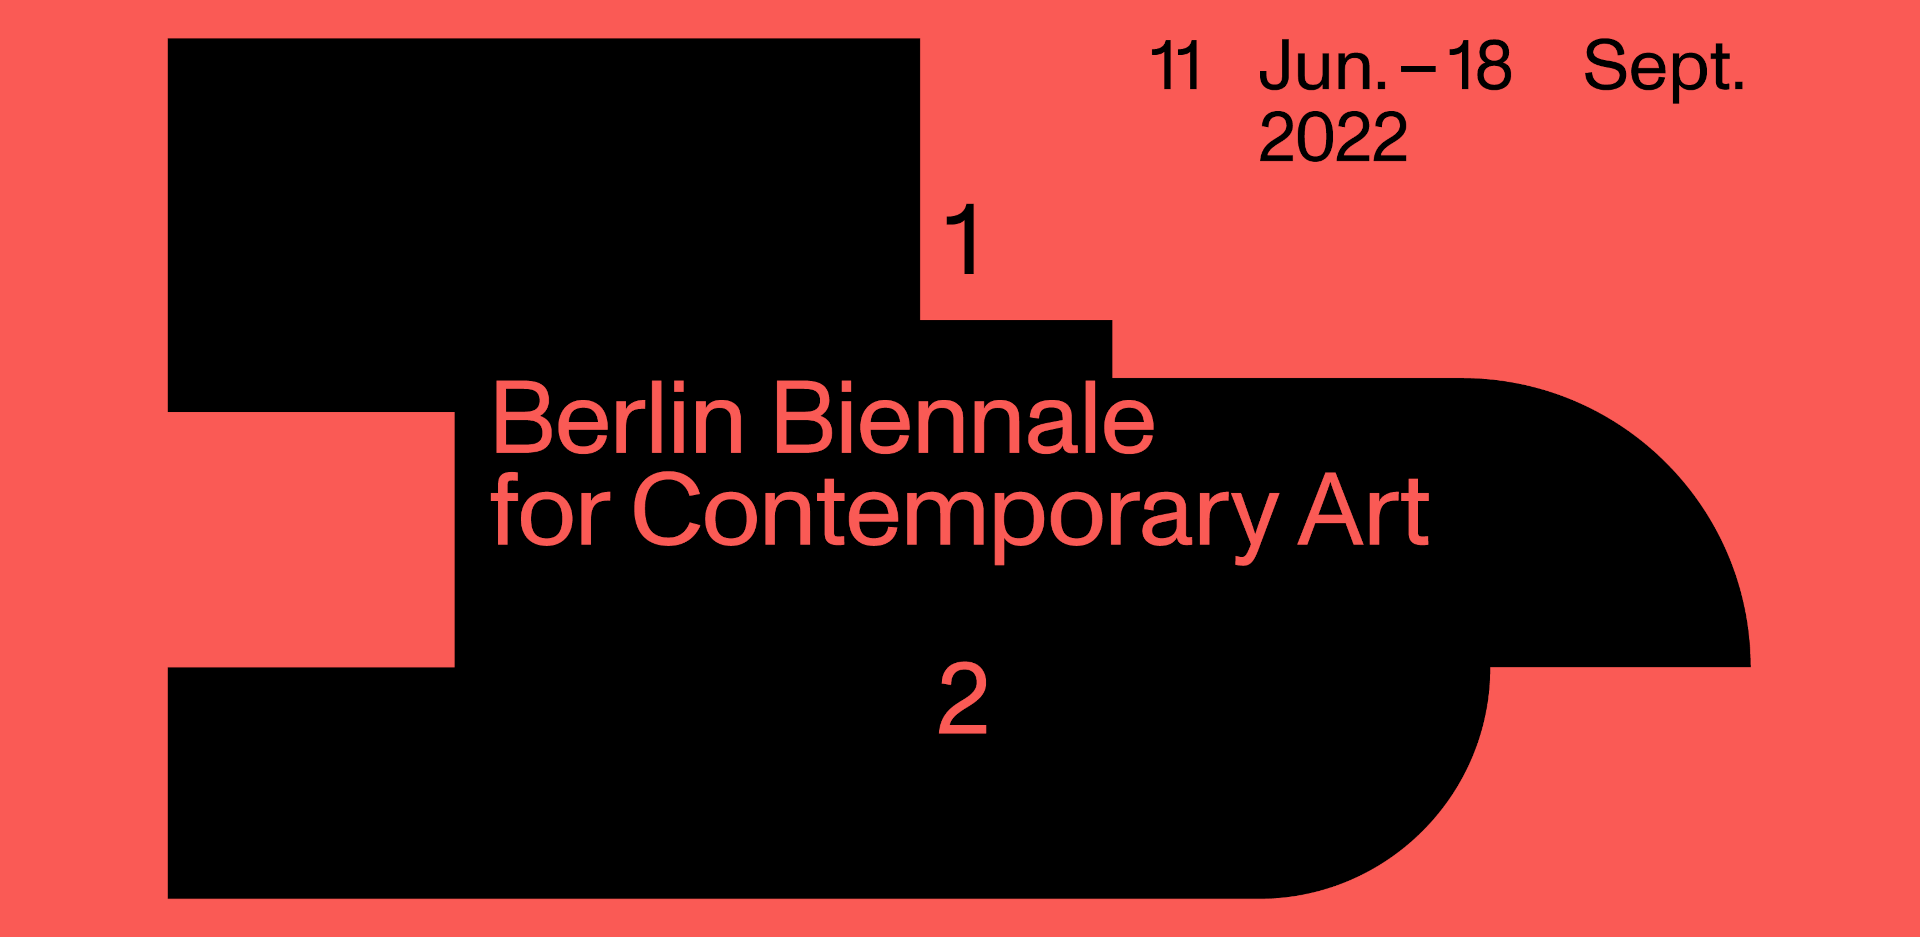 Kultur | lx accompagne une délégation d'artistes à la Biennale de Berlin